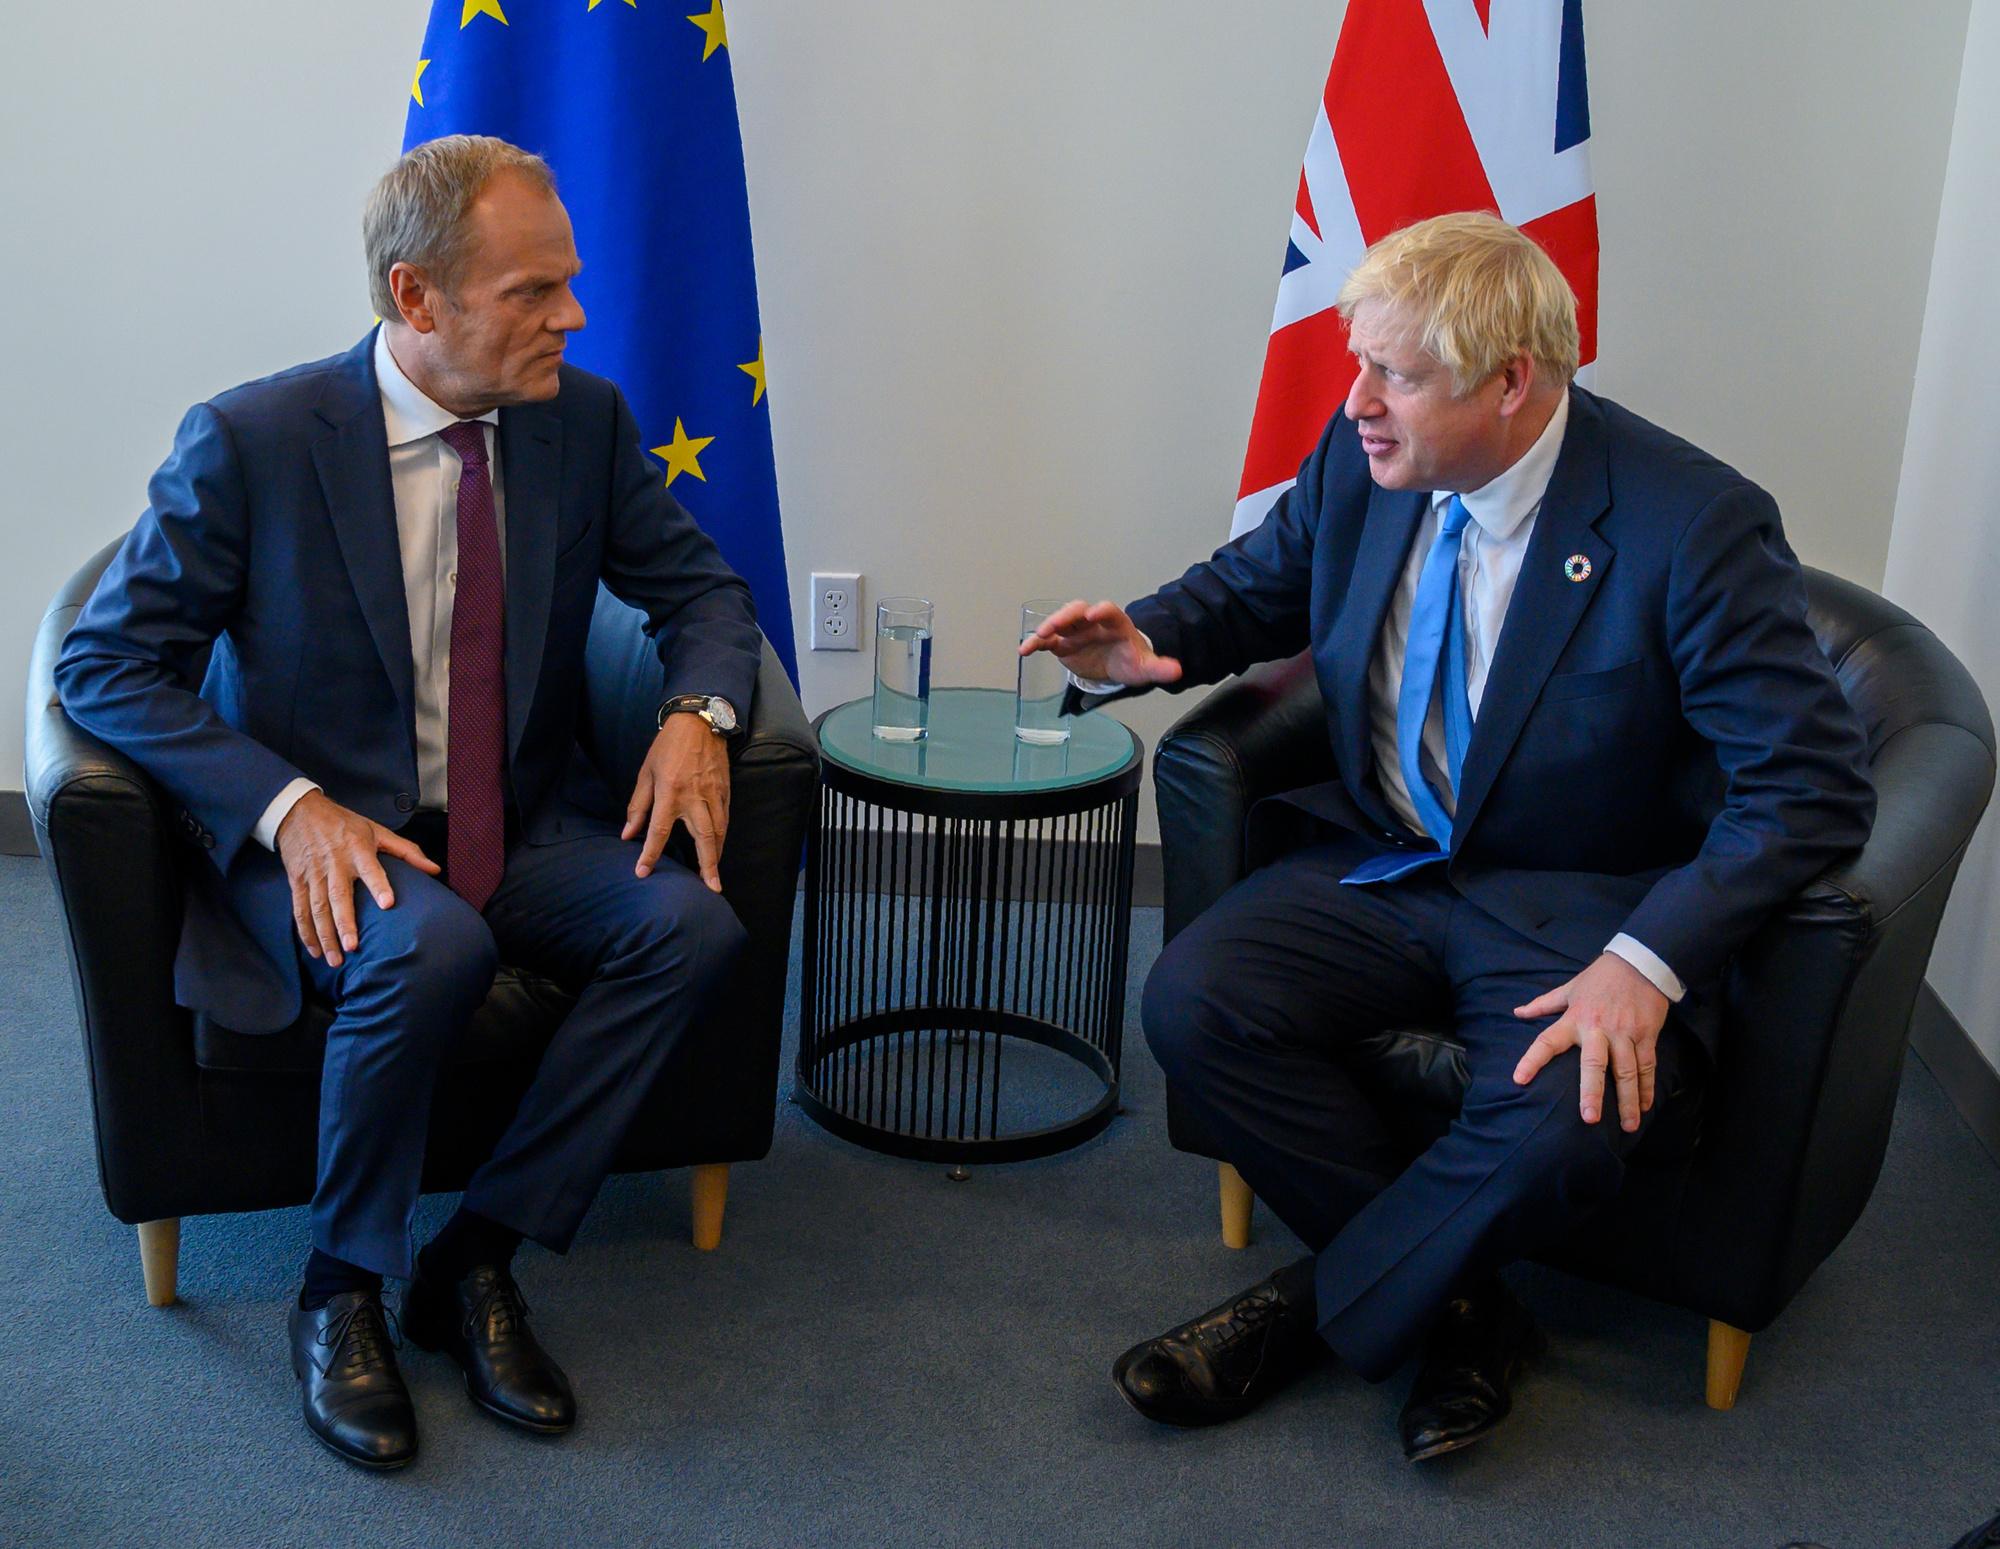 Le Premier ministre britannique Boris Johnson et le président du Conseil européen Donald Tusk (archives)